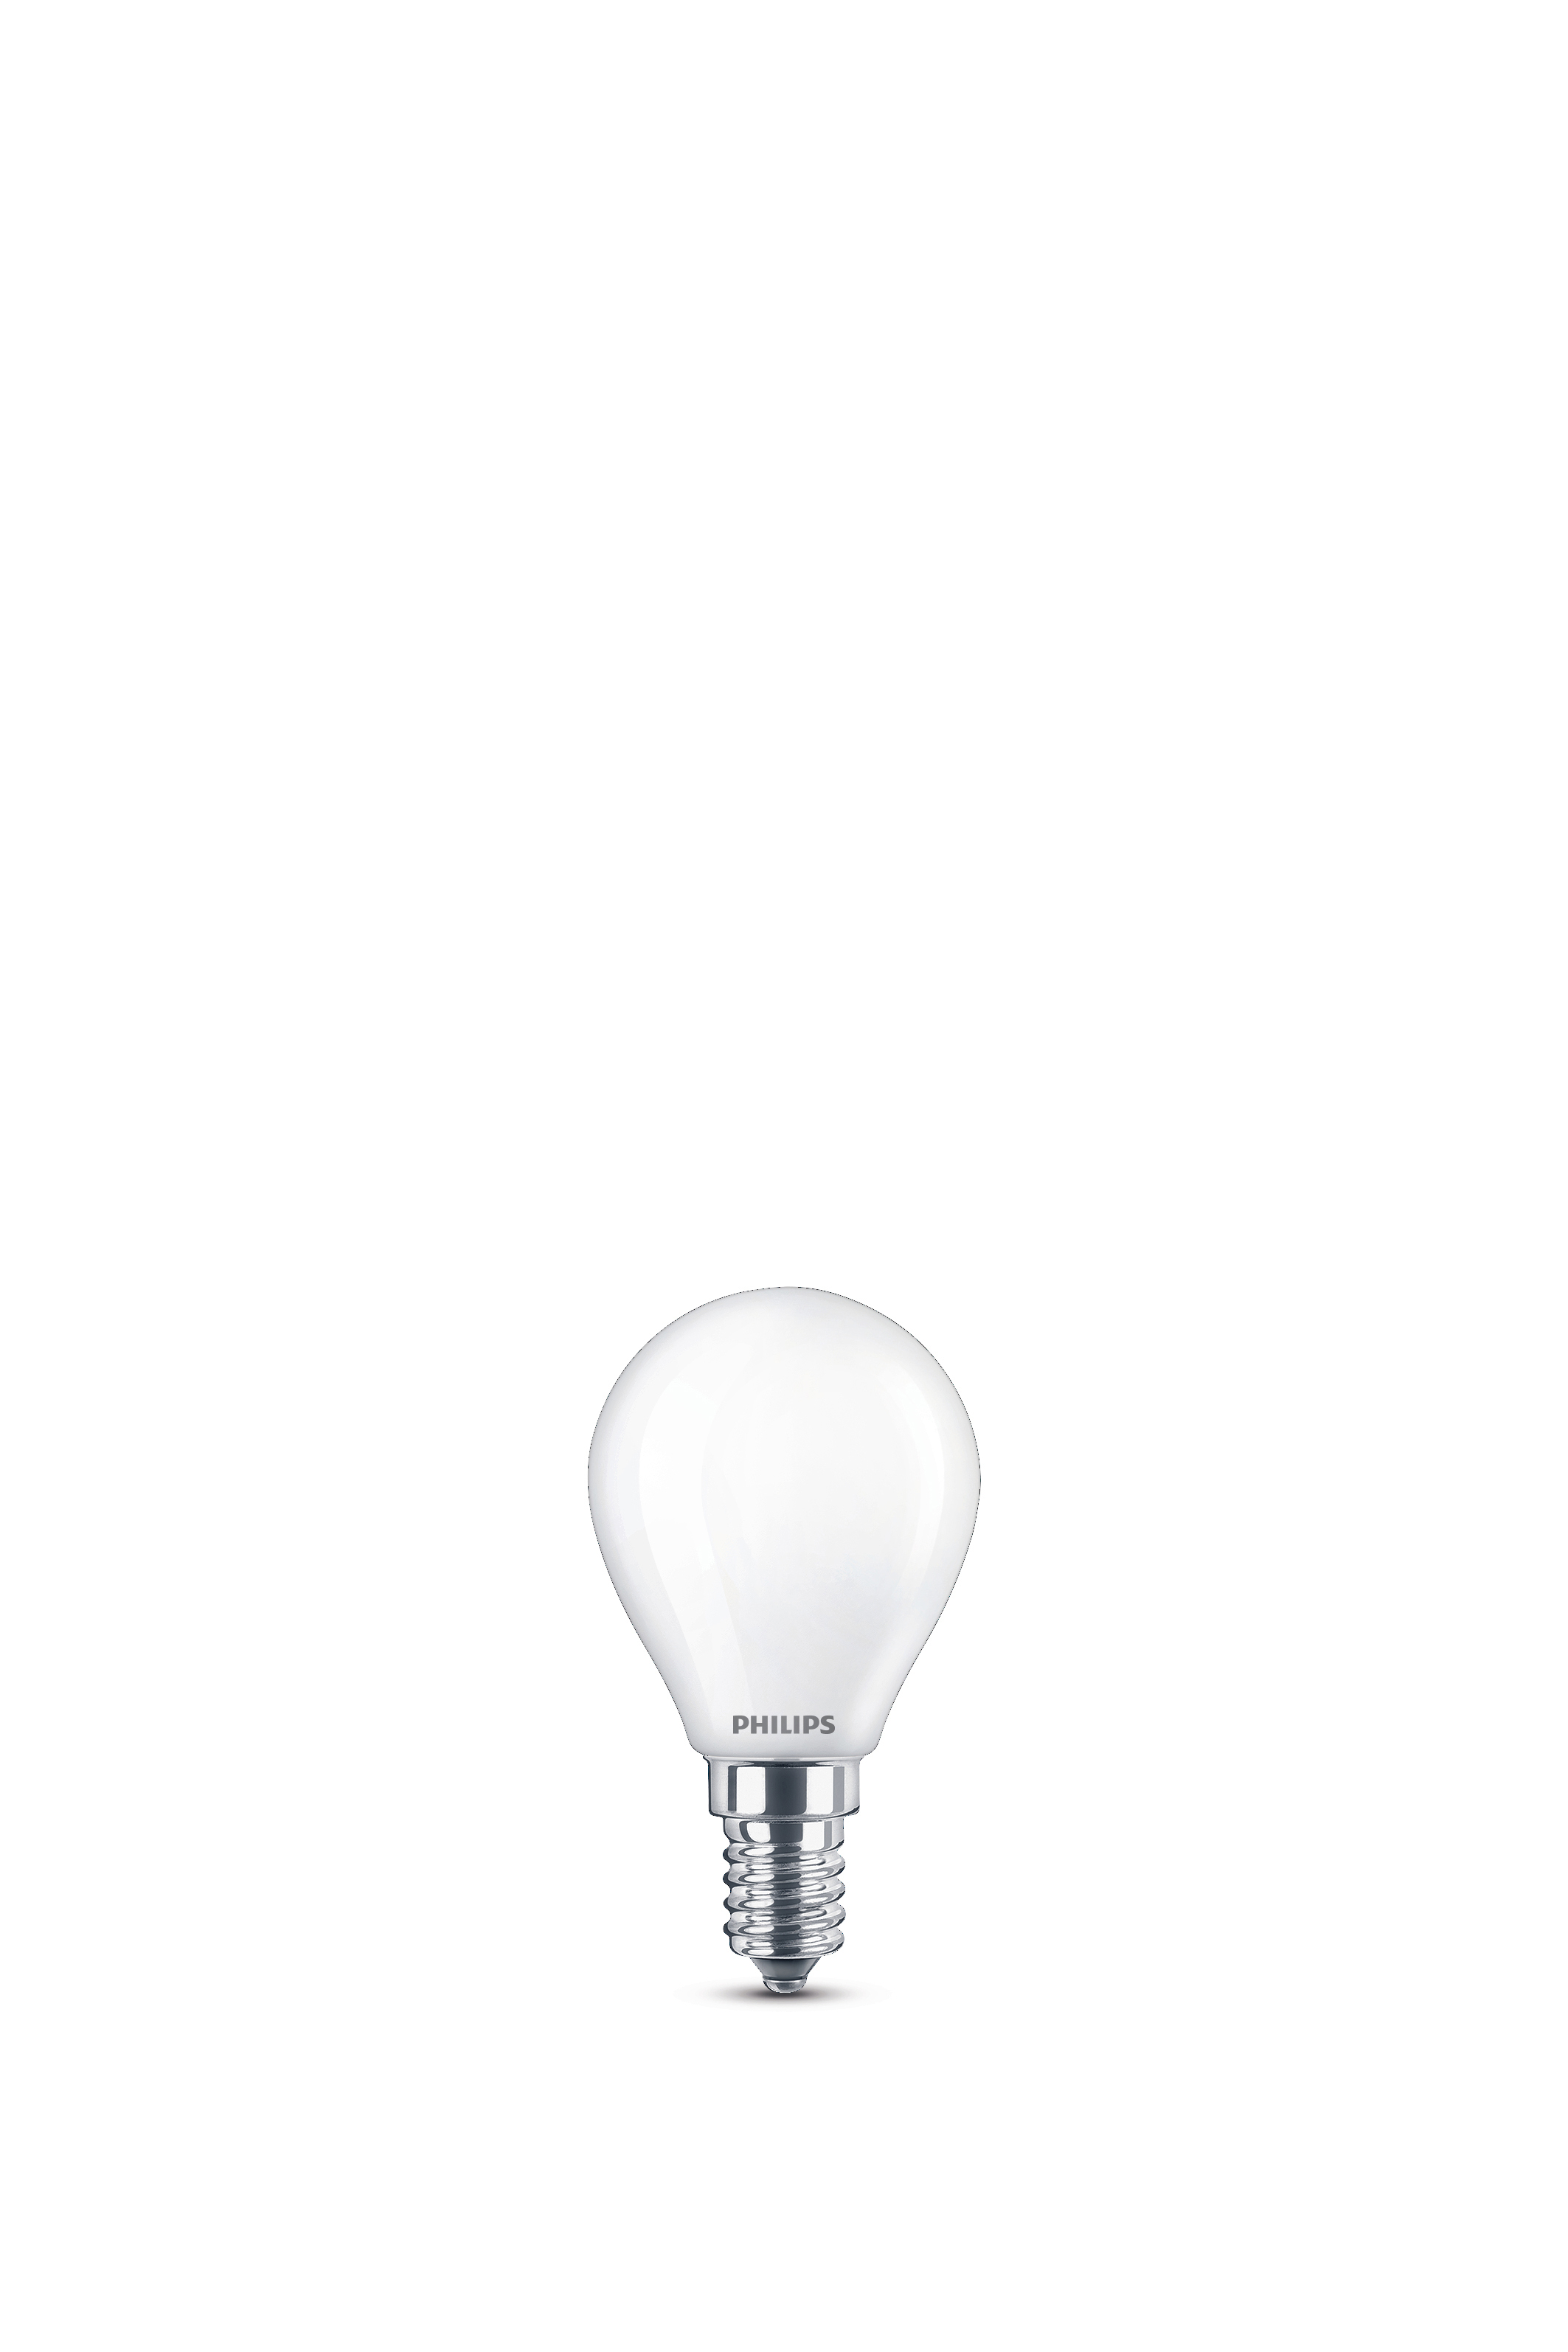 Lampe PHILIPS LED LEDclassic 40W Lampe ersetzt warmweiß